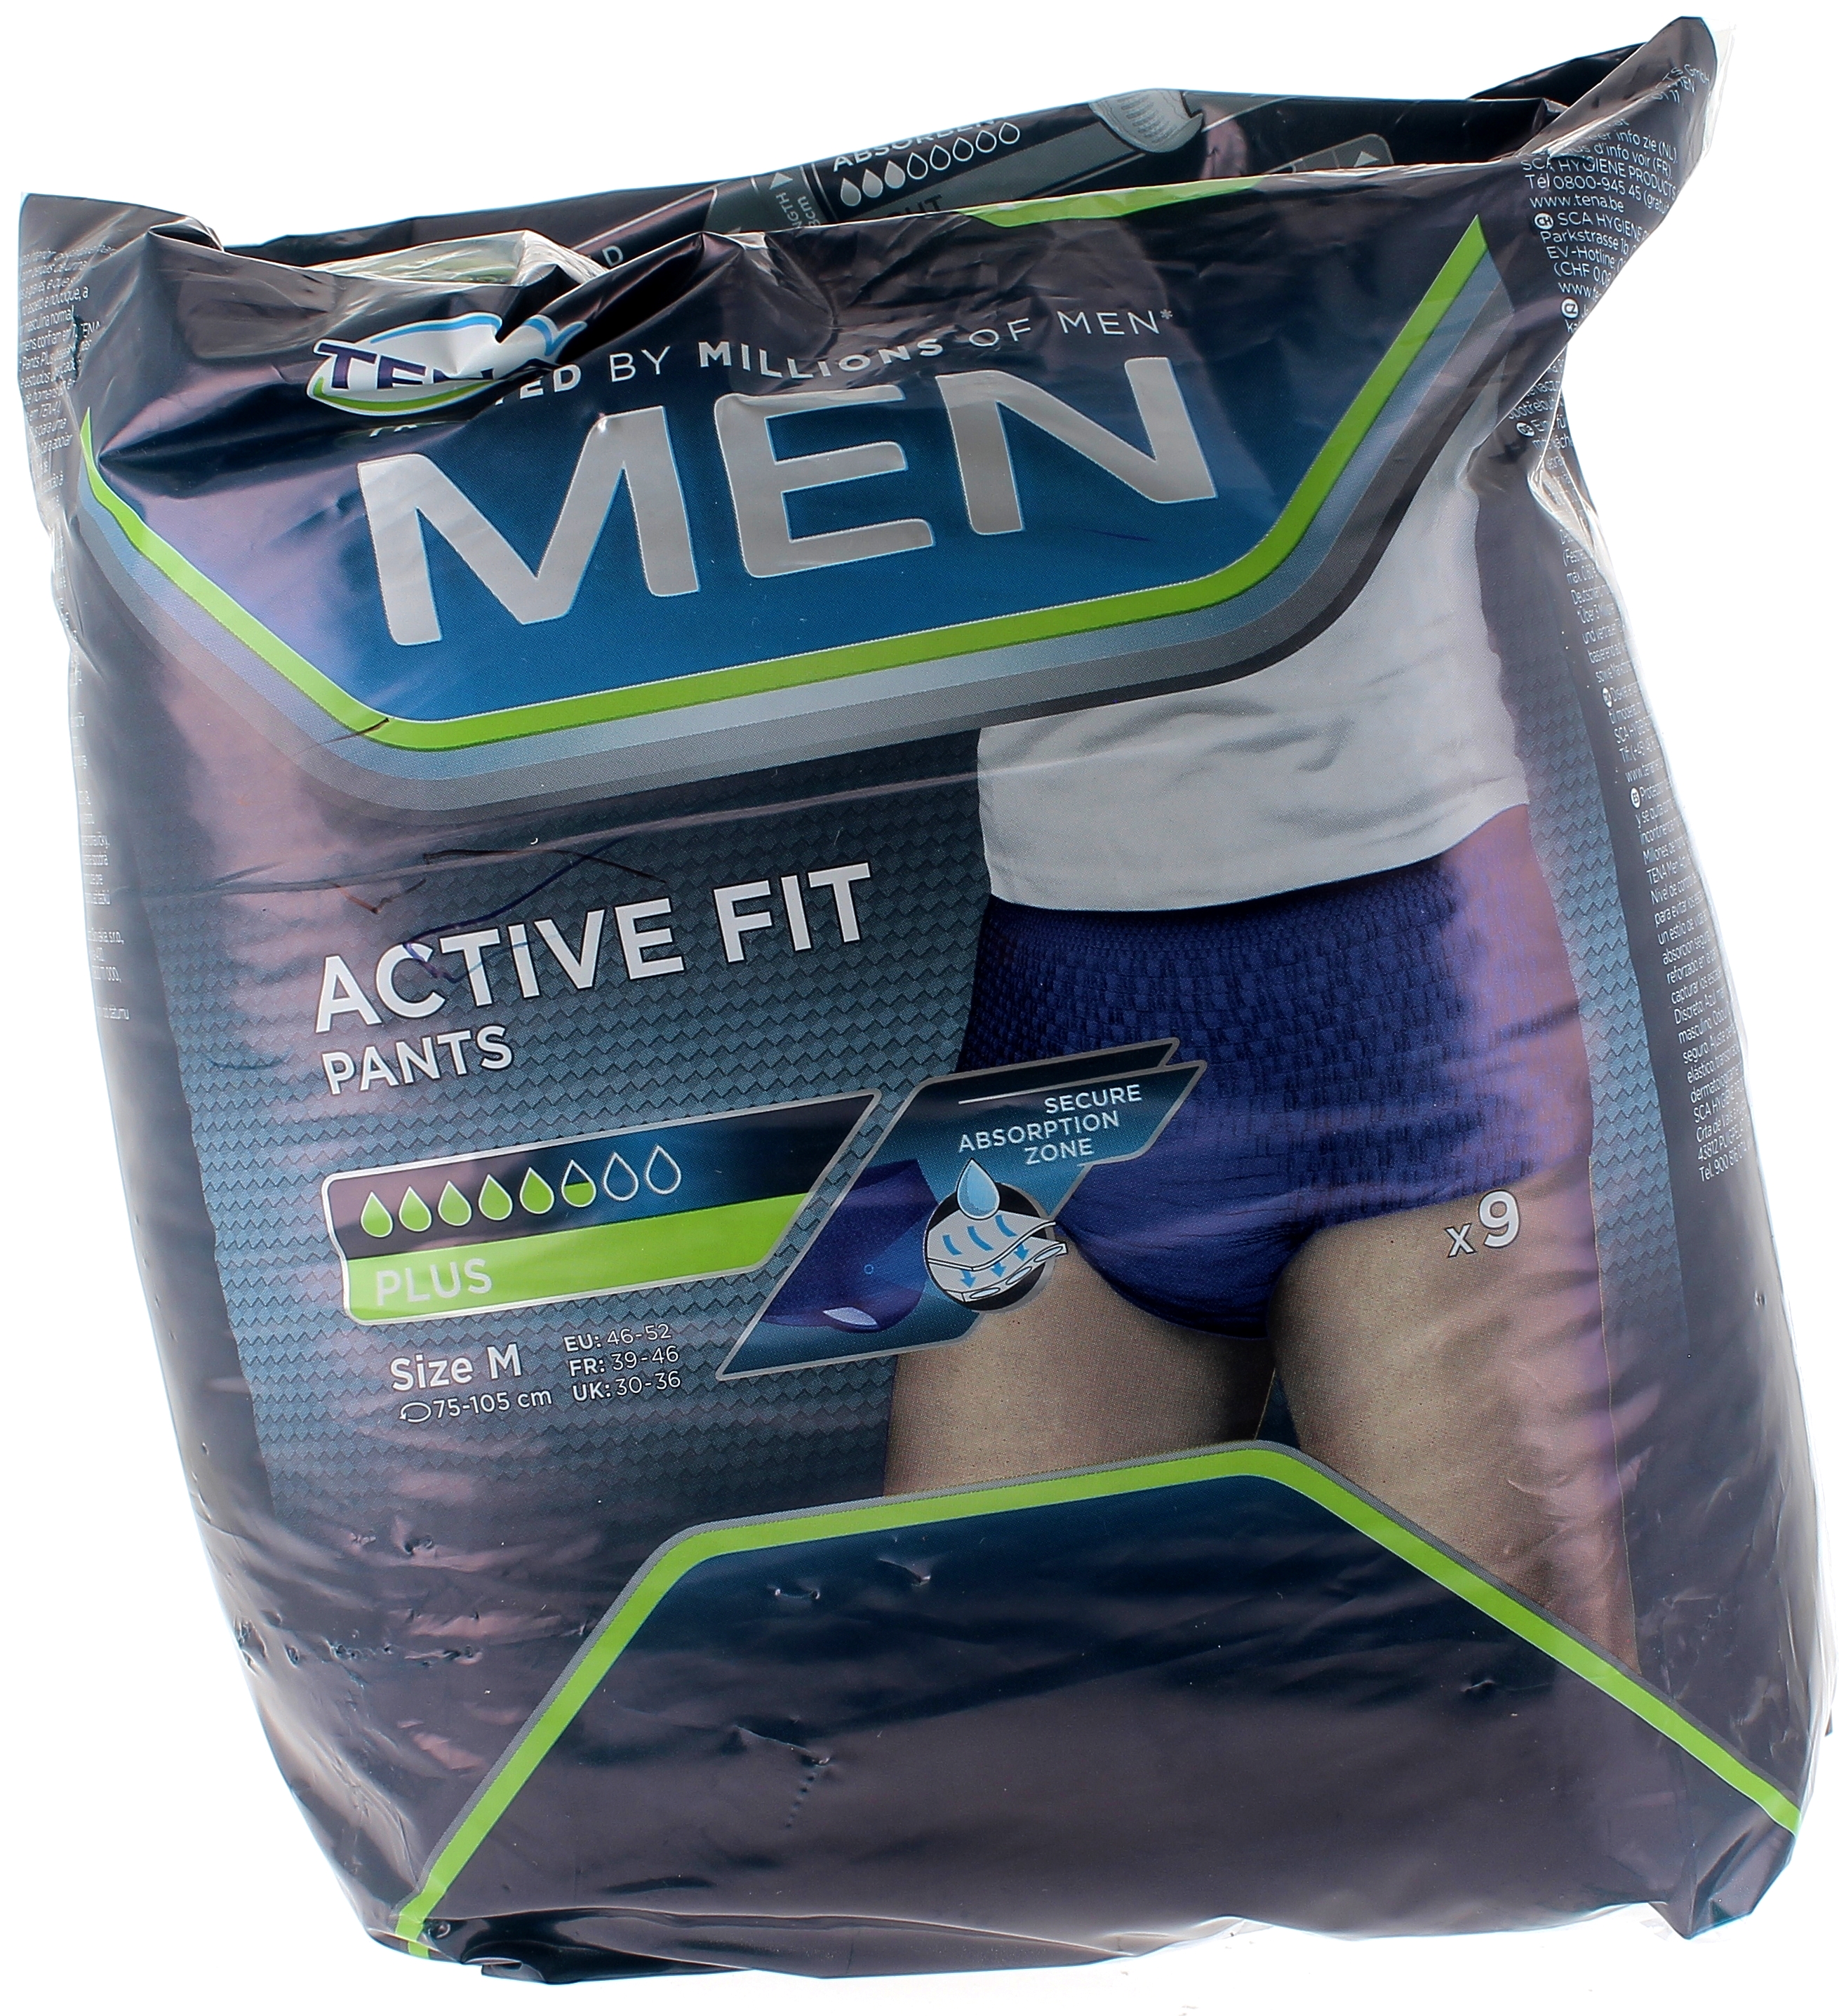 Active Fit pants Men 5,5 gouttes Tena - 9 protections taille M (75-105cm)